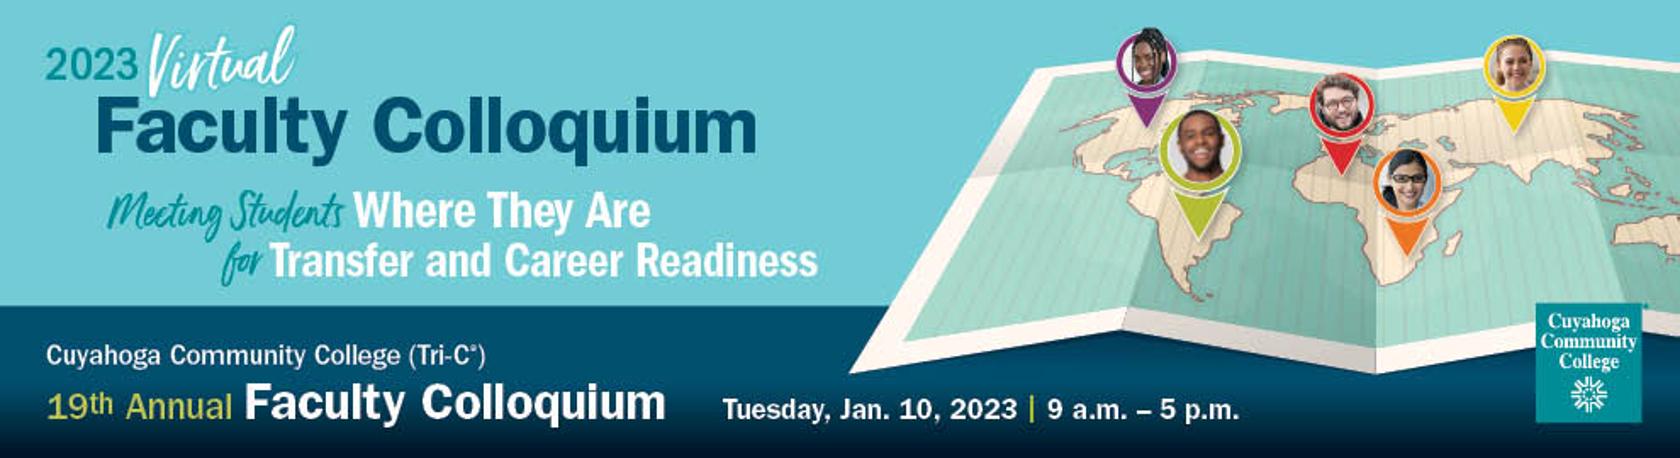 19th Annual Virtual Faculty Colloquium  -  Tuesday Jan. 10, 2023